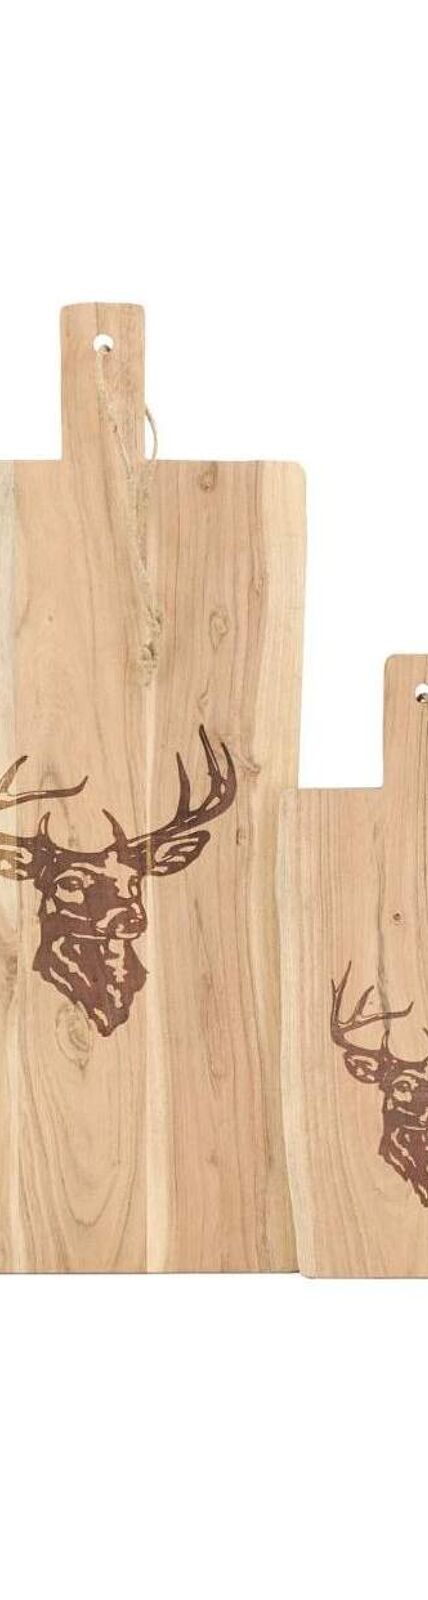 Grande planche à découper en bois d'acacia - Cerf Grand modèle